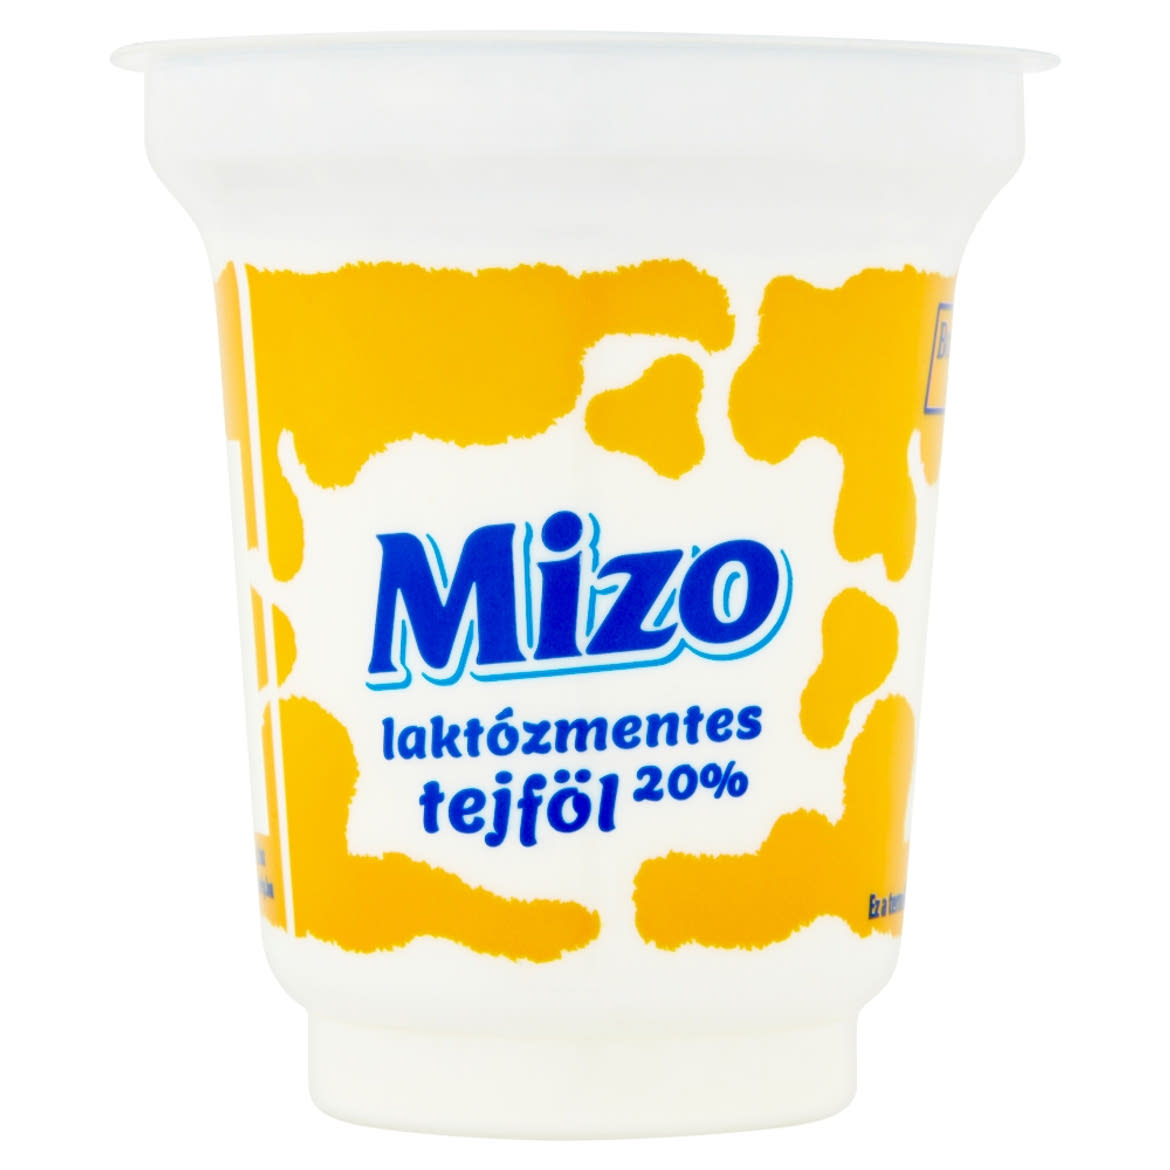 Mizo laktózmentes tejföl 20%